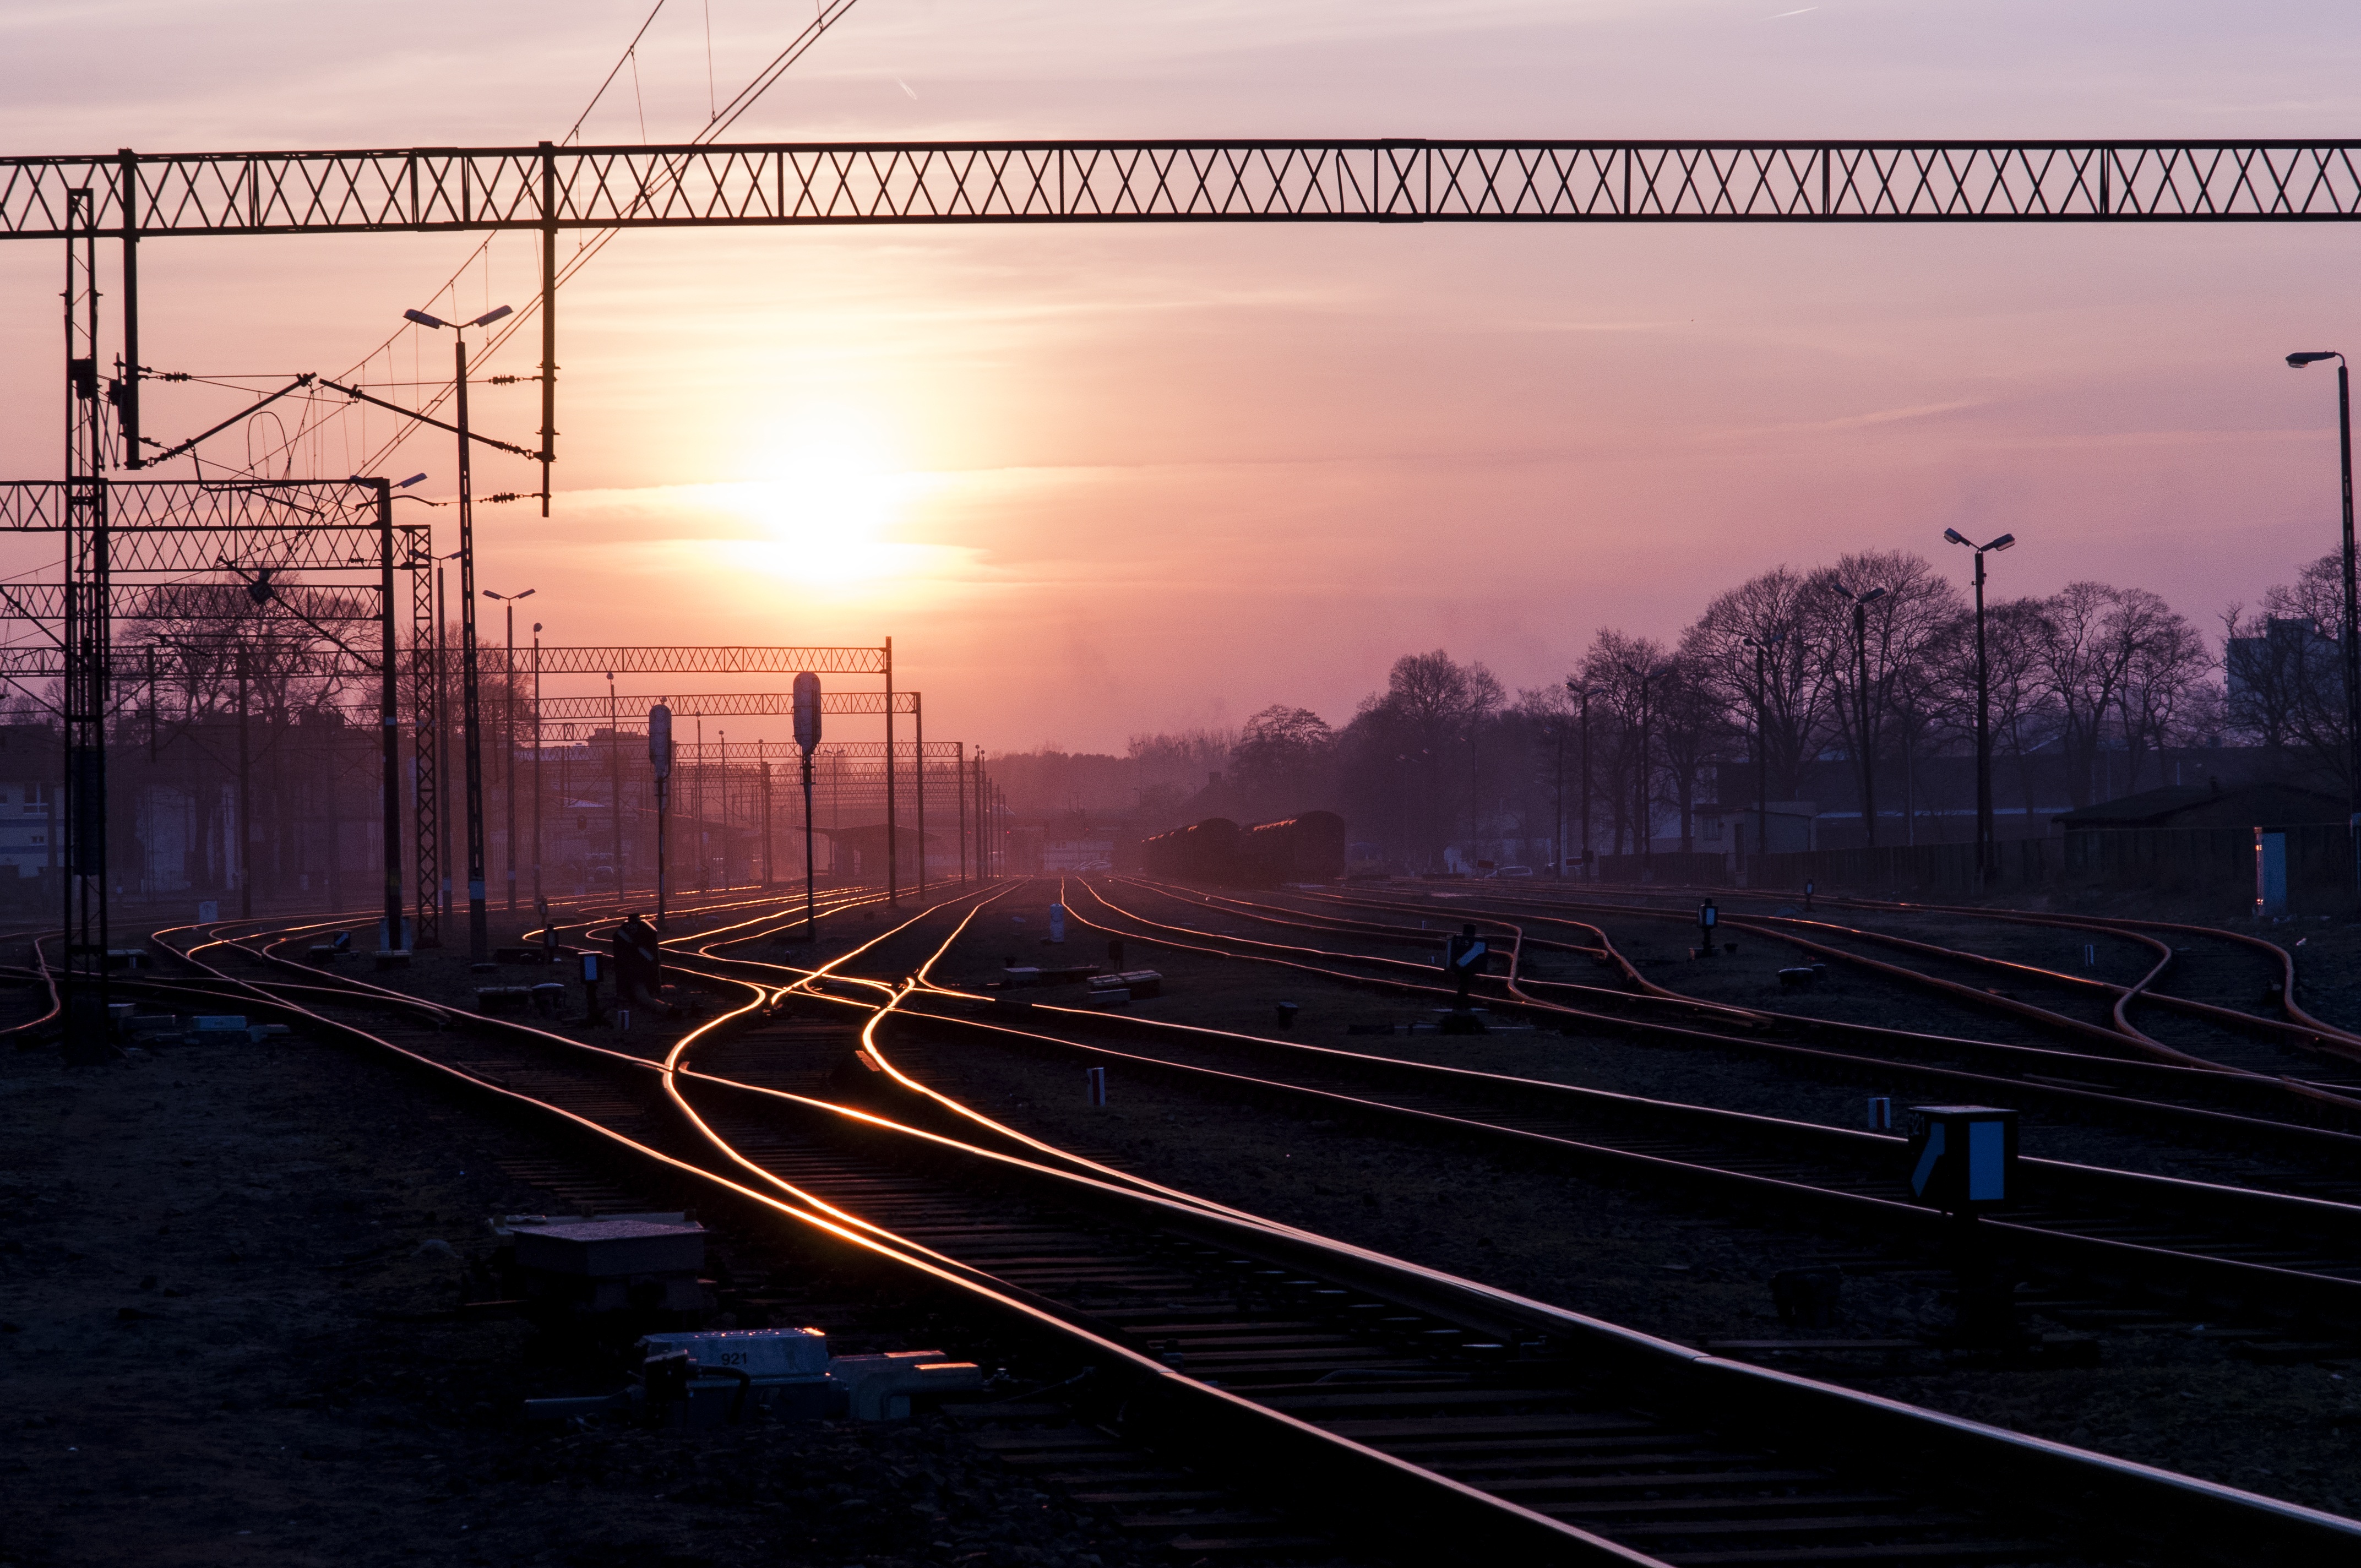 Обои светящиеся, технологии, трасса, железная дорога, железной дороги, восход солнца, закат - бесплатные картинки на Fonwall